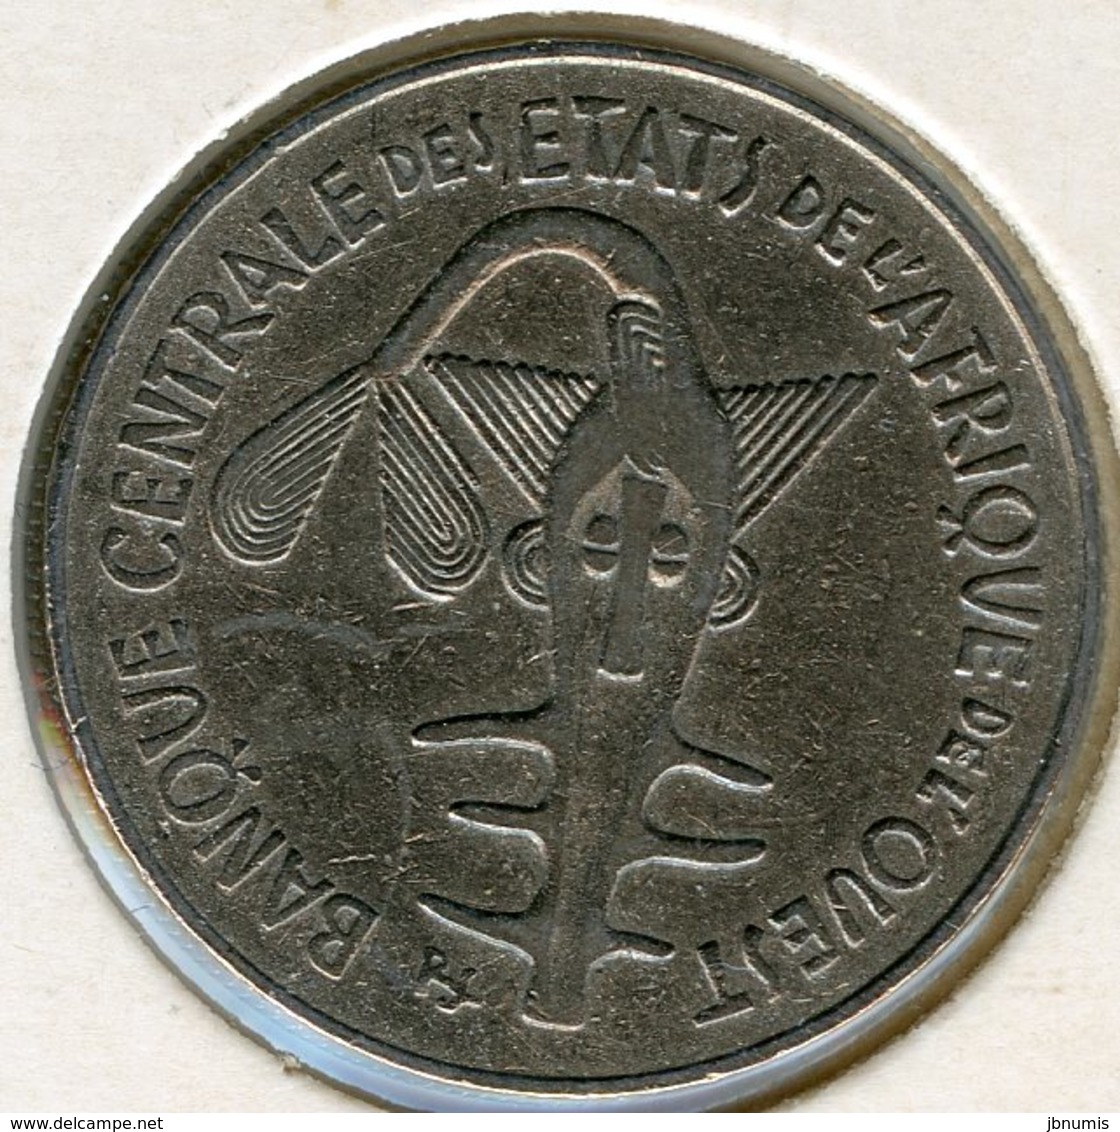 Afrique De L'Ouest West African States Union Monétaire 100 Francs 1981 BCEAO UMOA KM 4 - Autres – Afrique